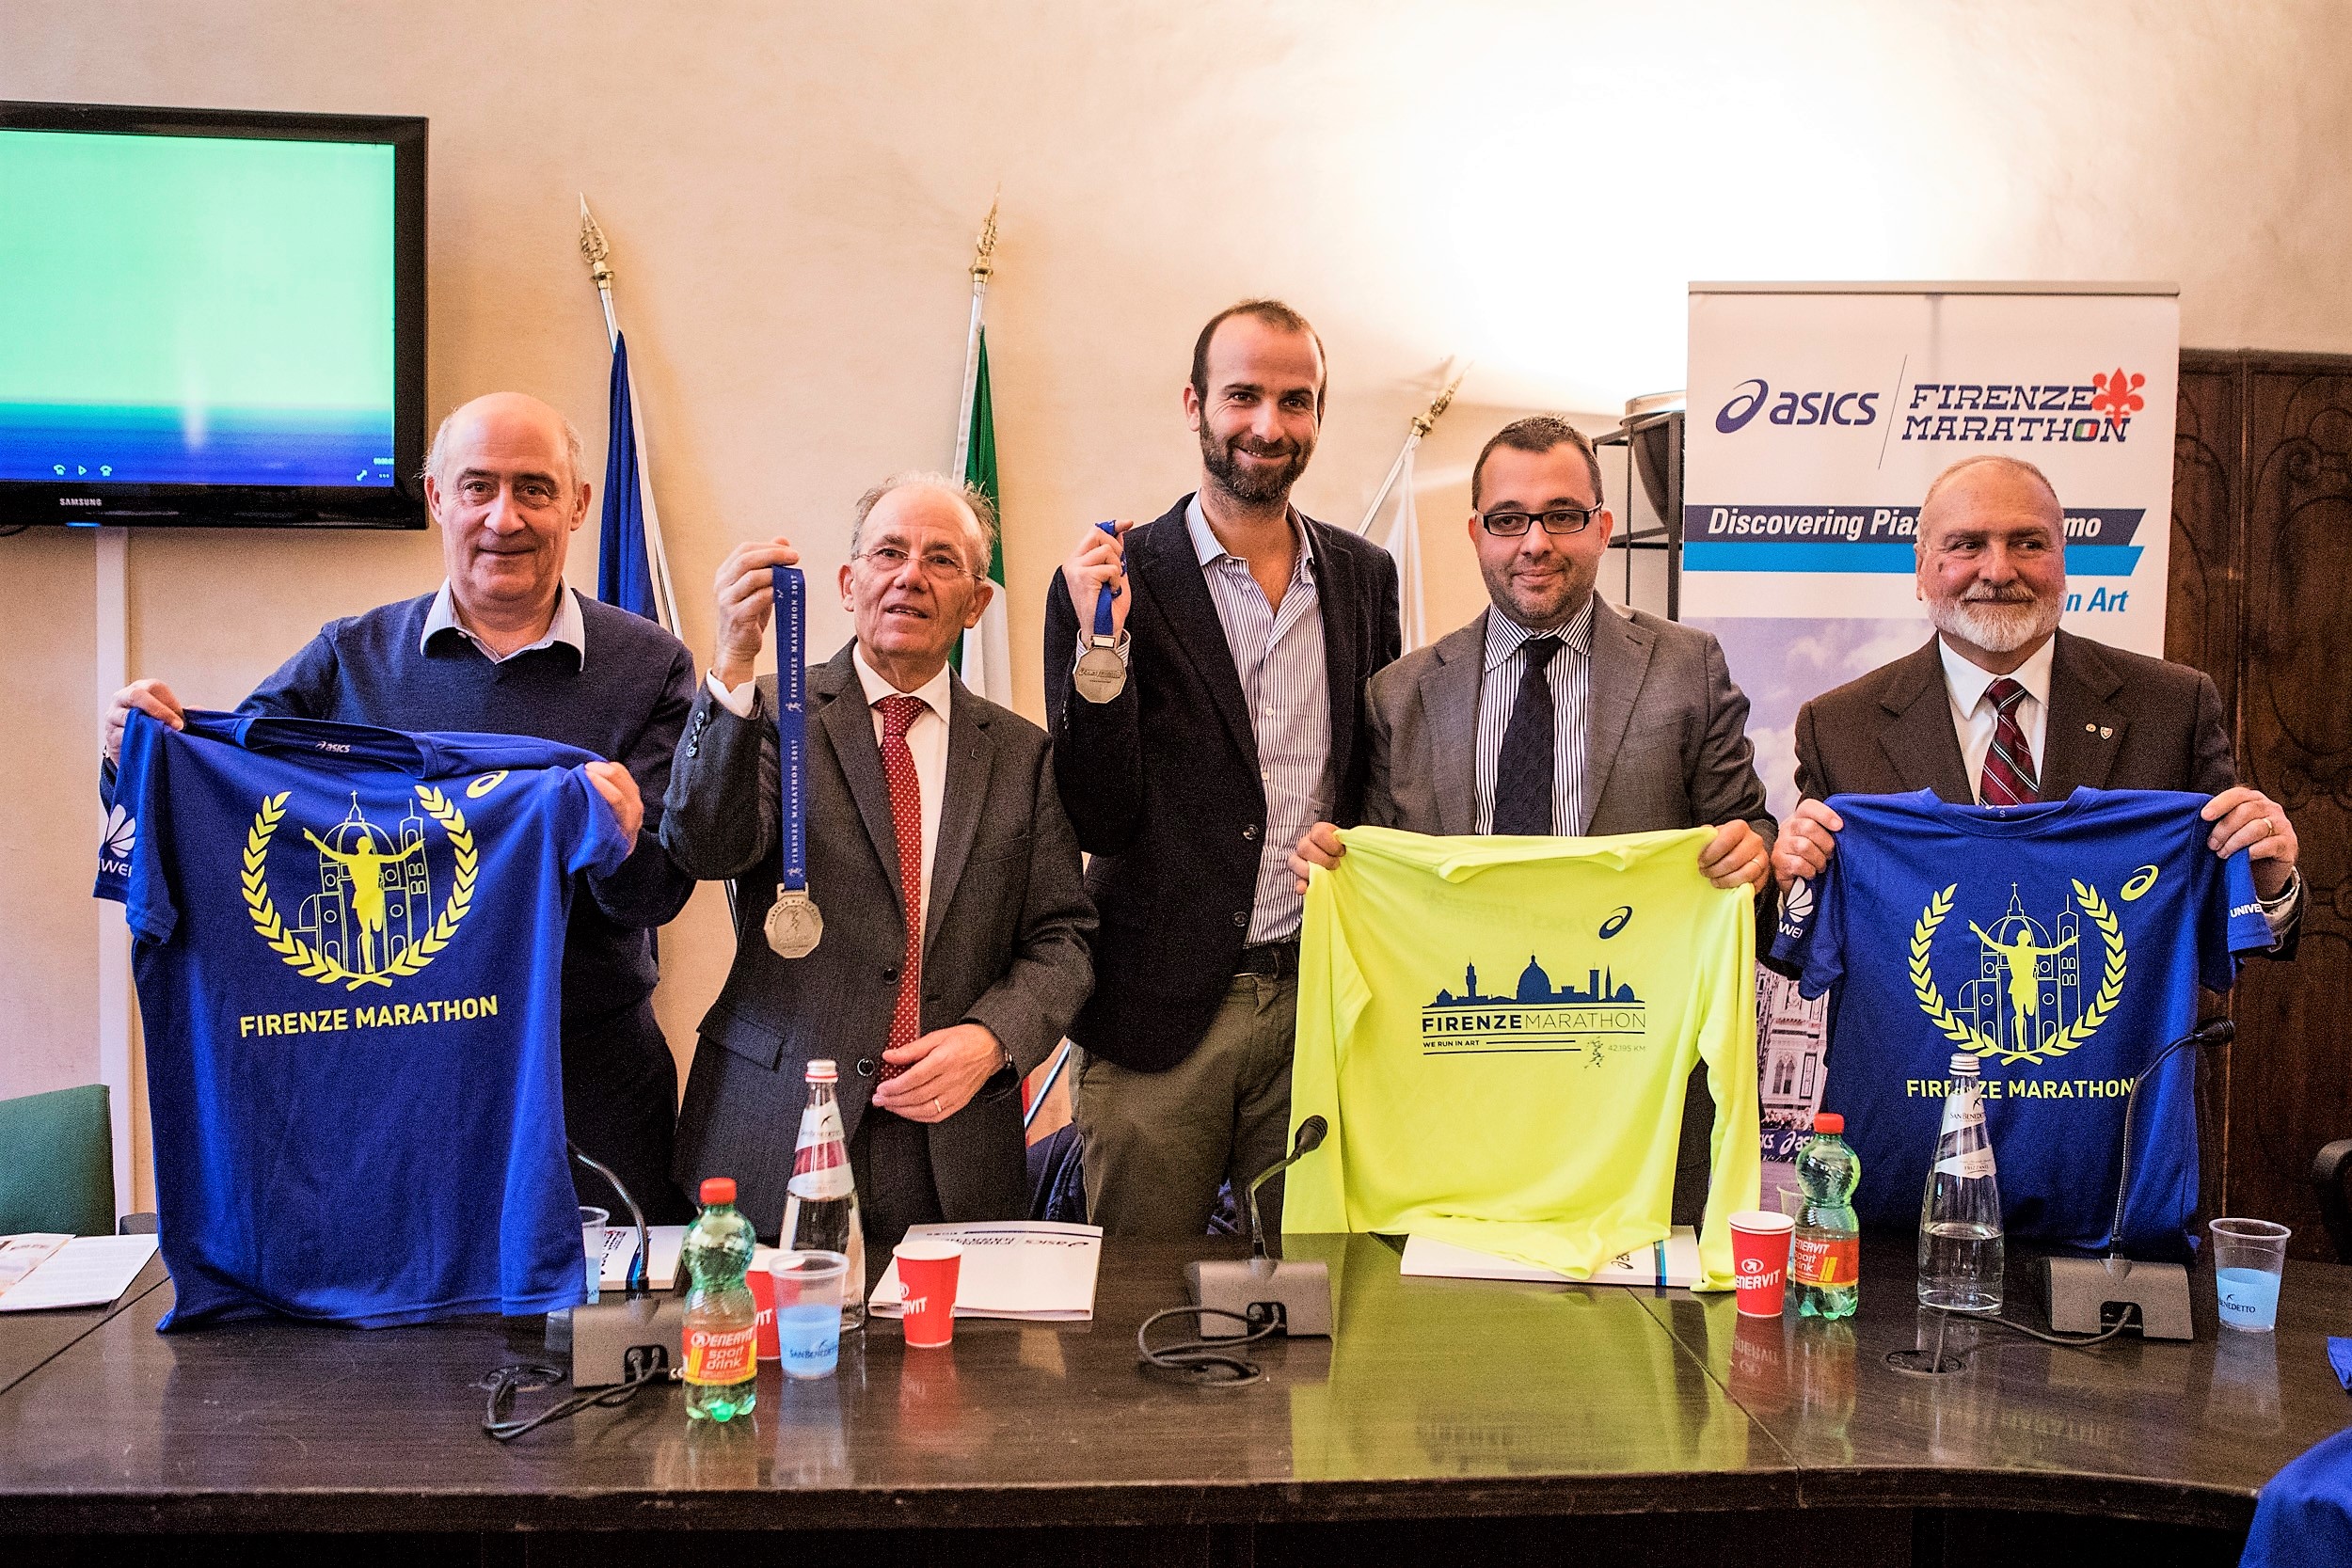 Presentazione Ascis Firenzer Marathon